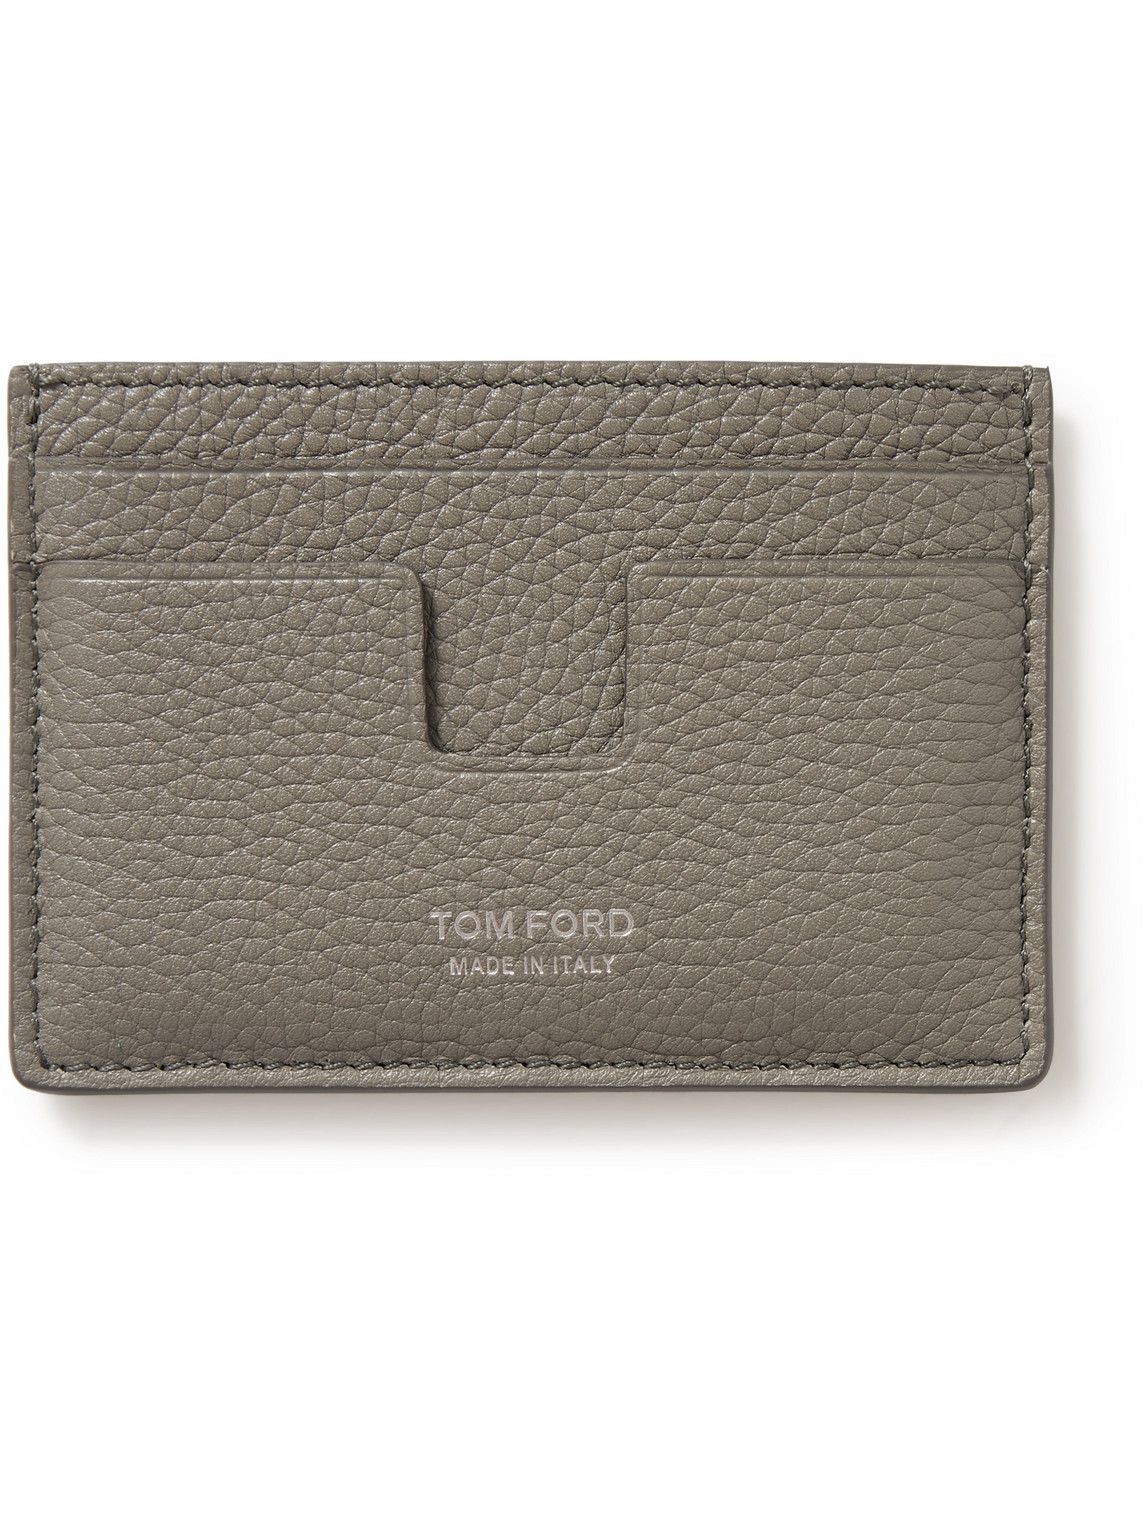 TOM FORD - Full-Grain Leather Cardholder TOM FORD